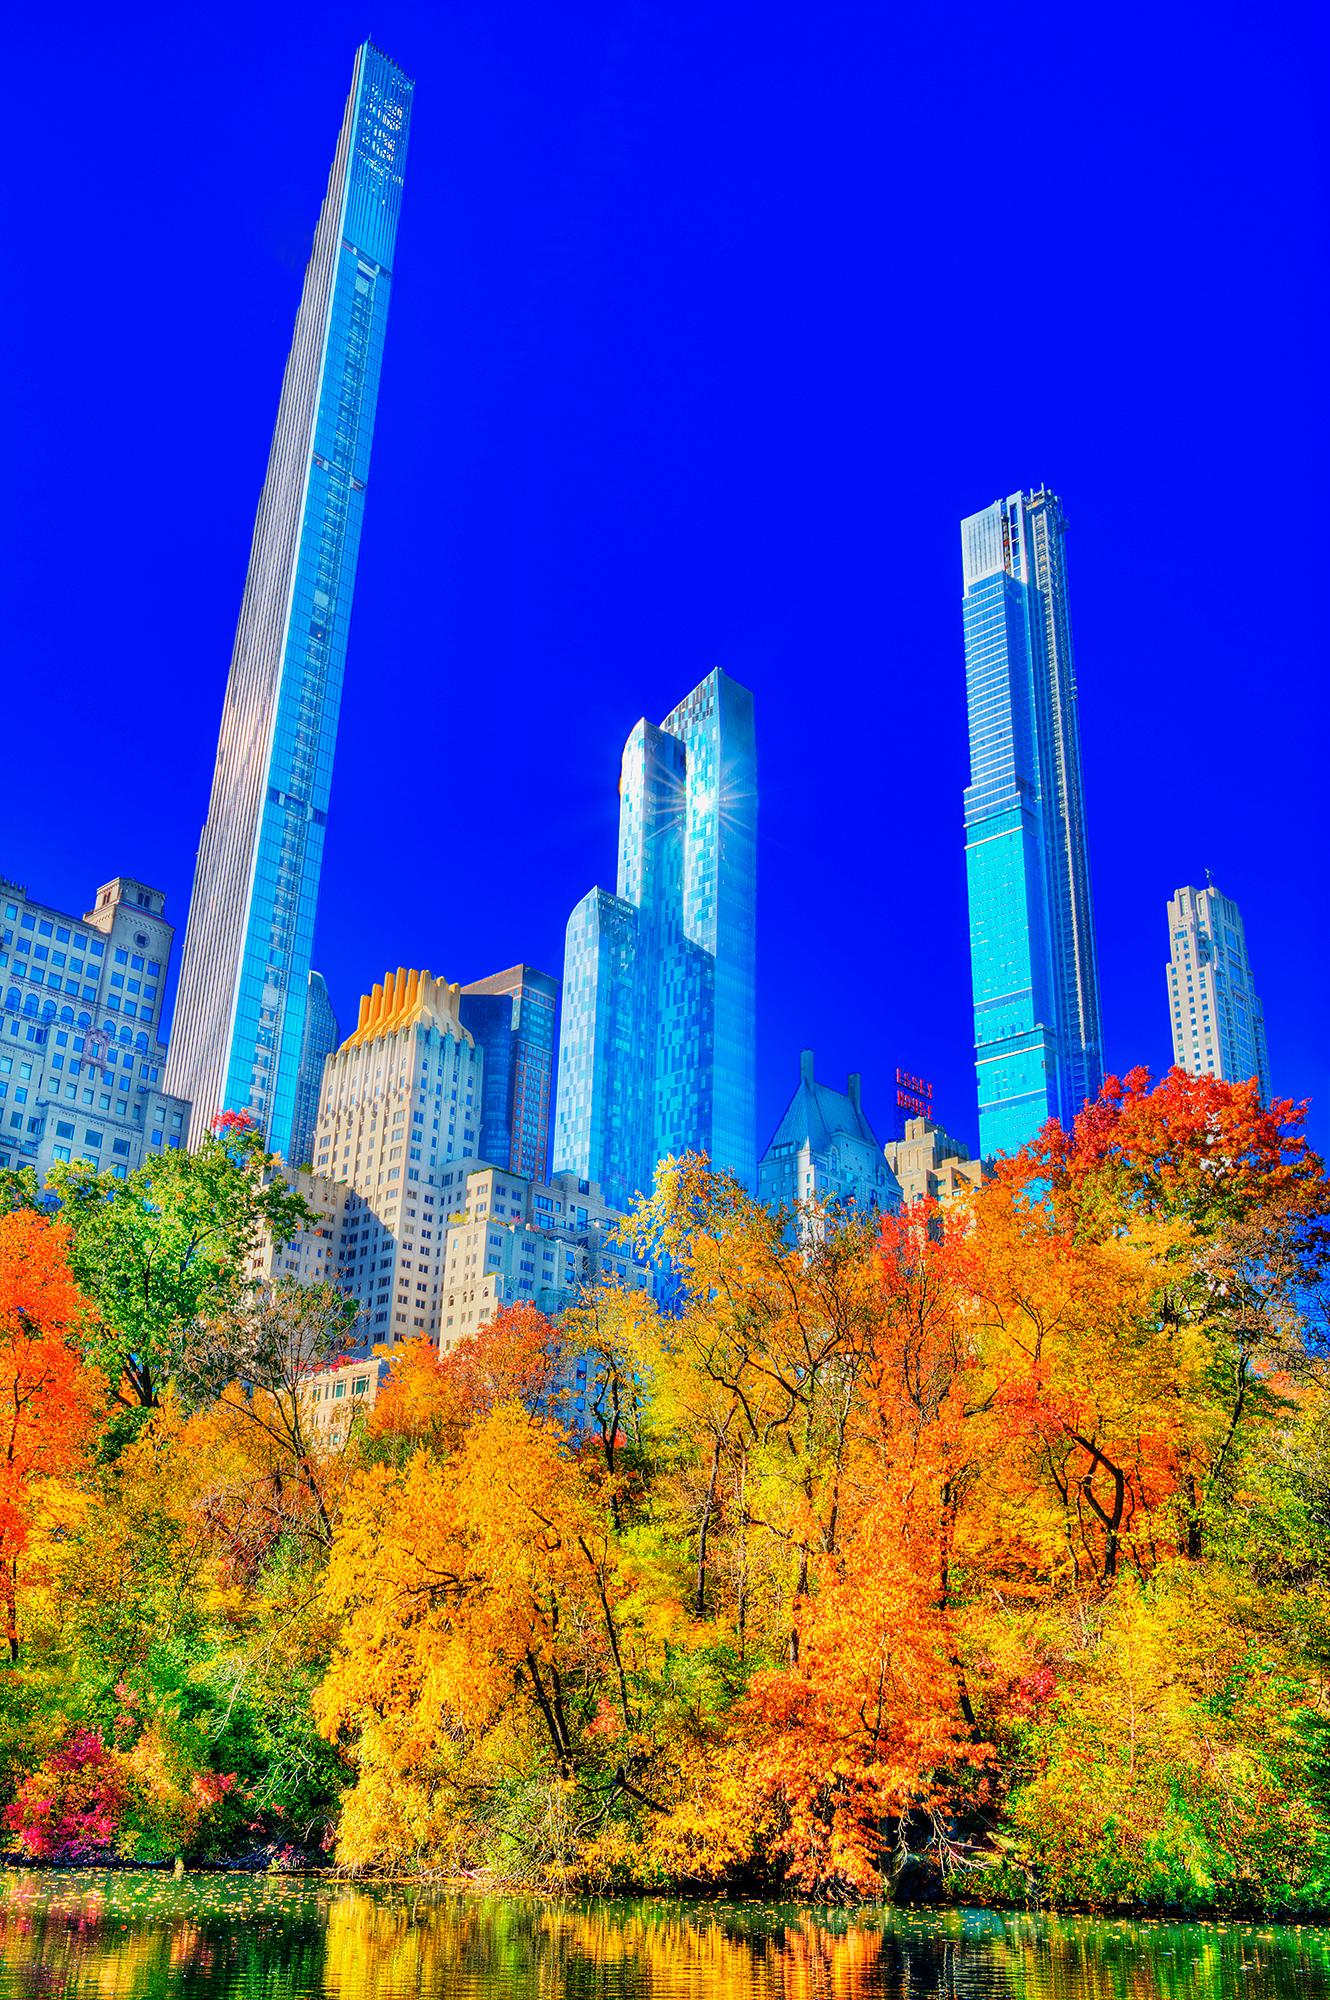  Central Park In Autumn mit Billionaires Row Wolkenkratzern. Surreale Stadt